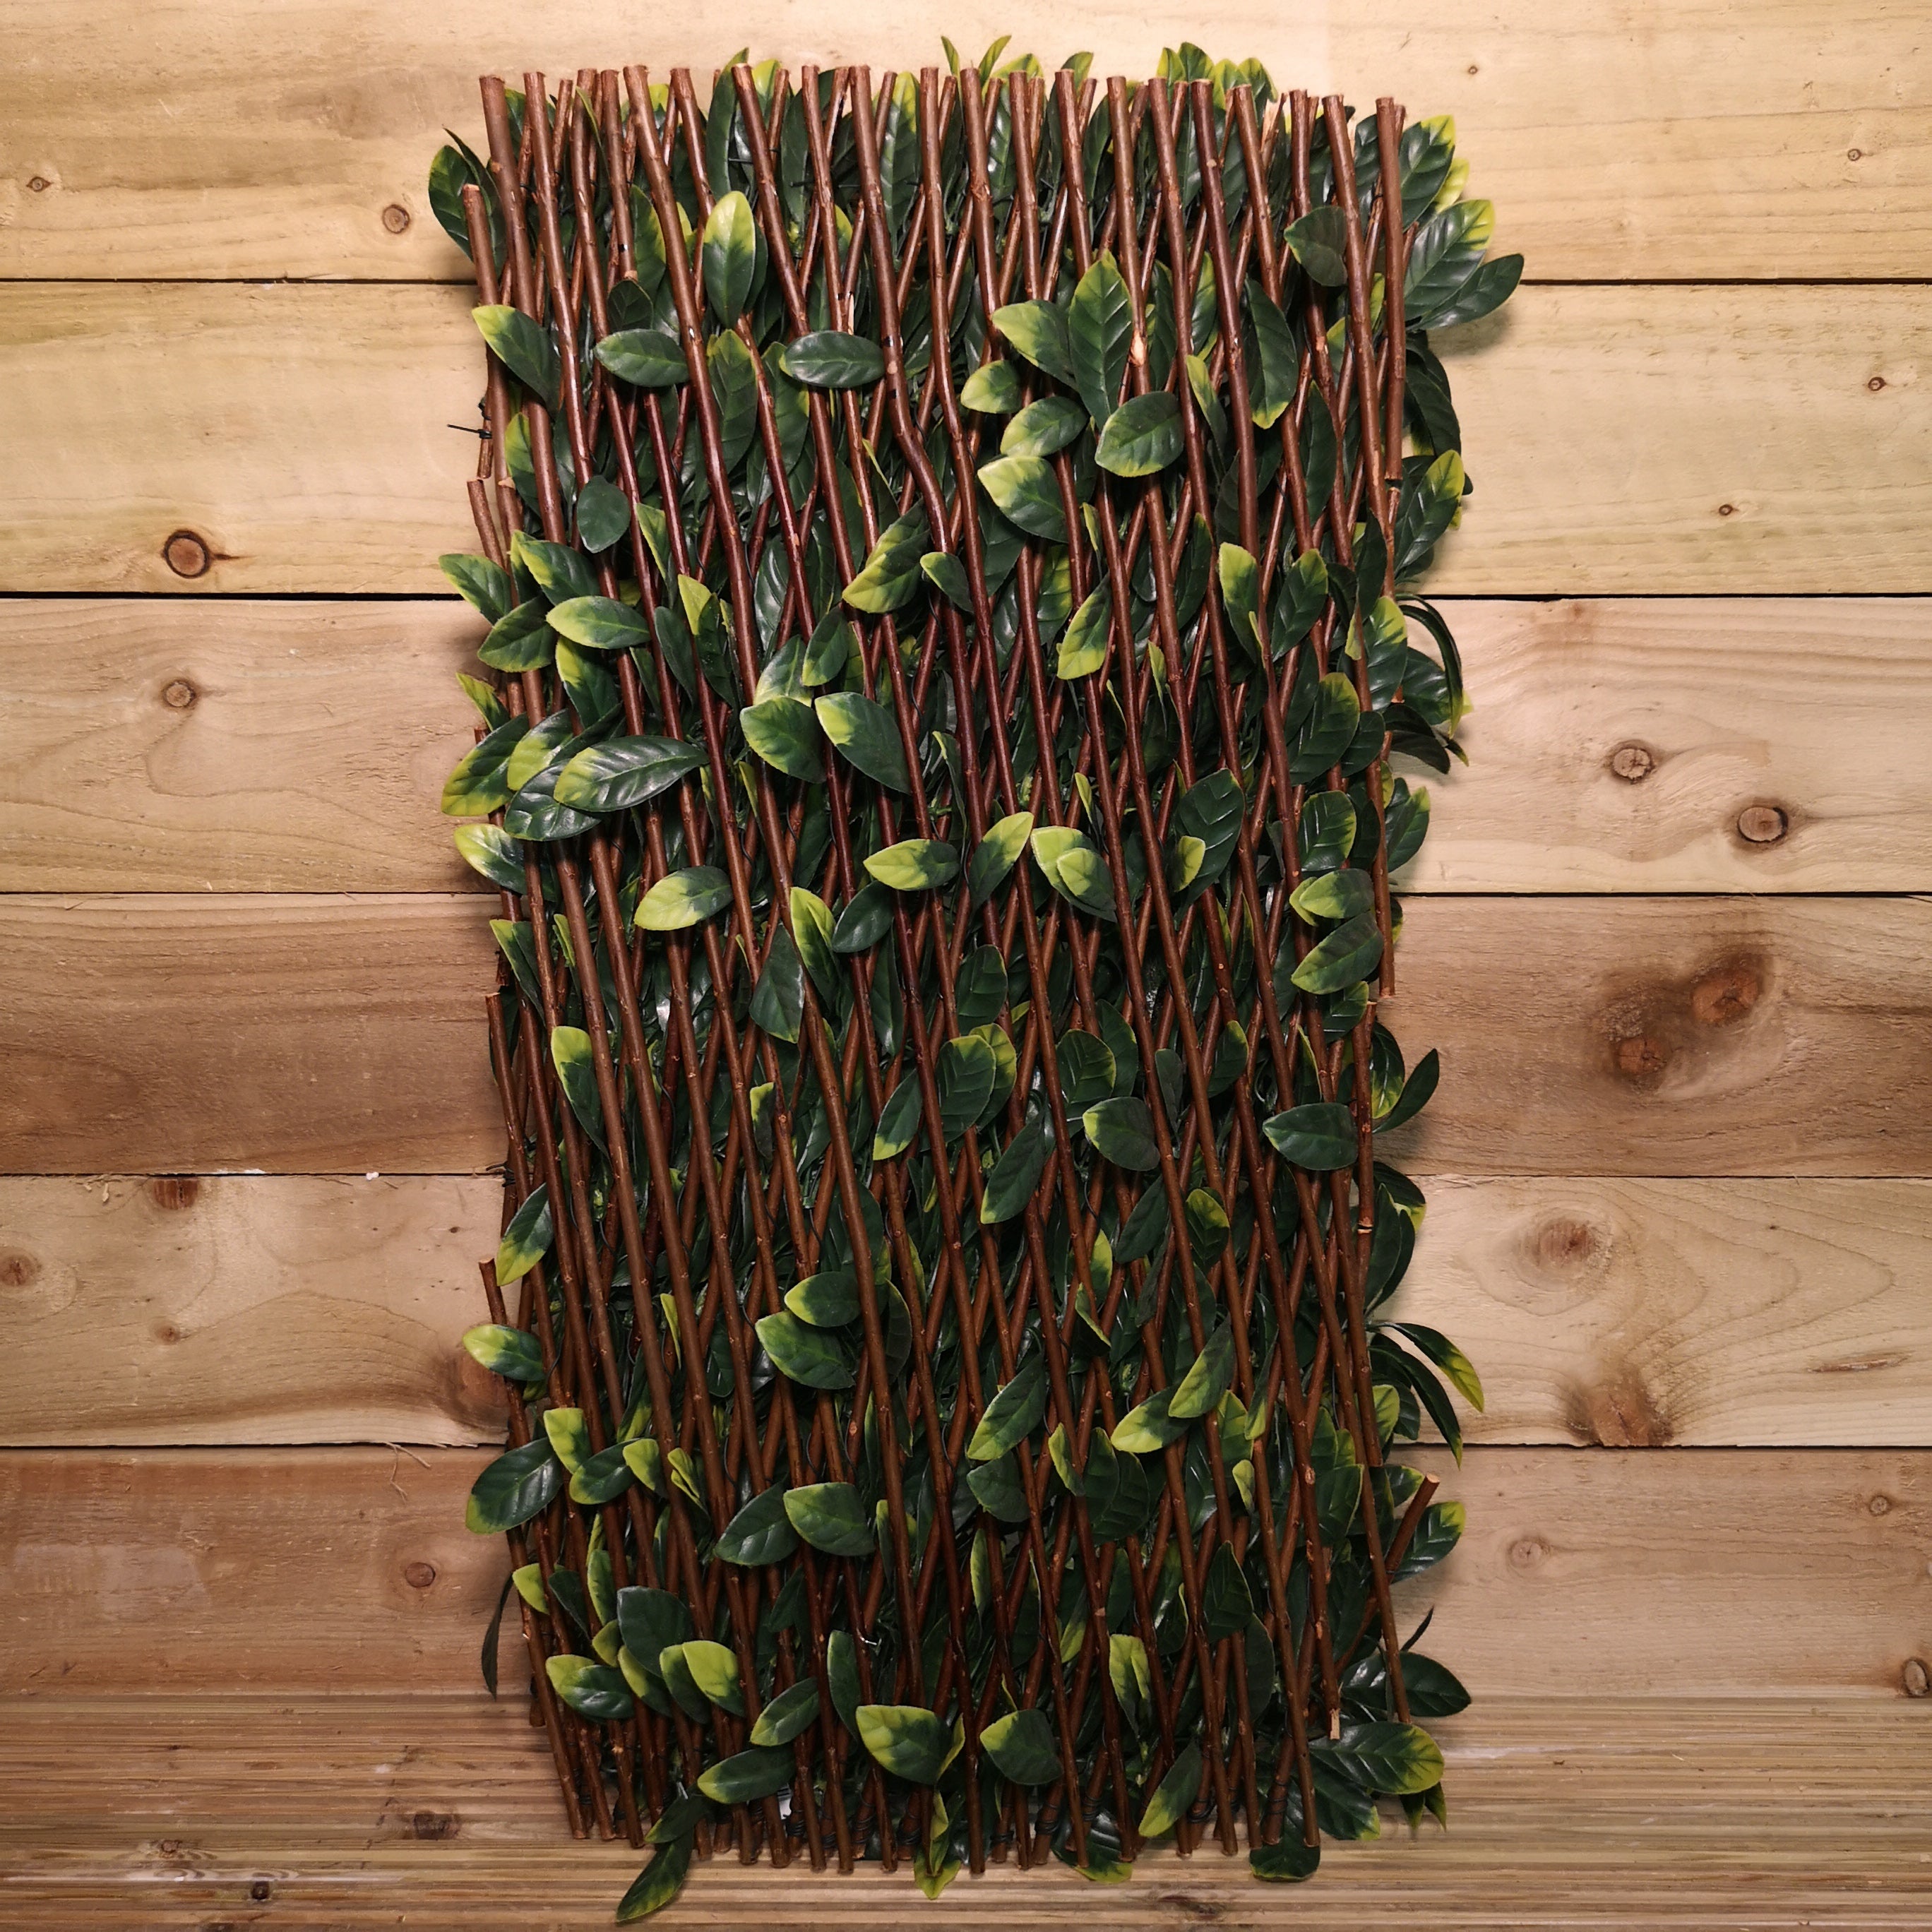 180cm x 60cm Artificial Fence Garden Trellis Privacy Screening Indoor Outdoor Wall Panel - Laurel Leaf